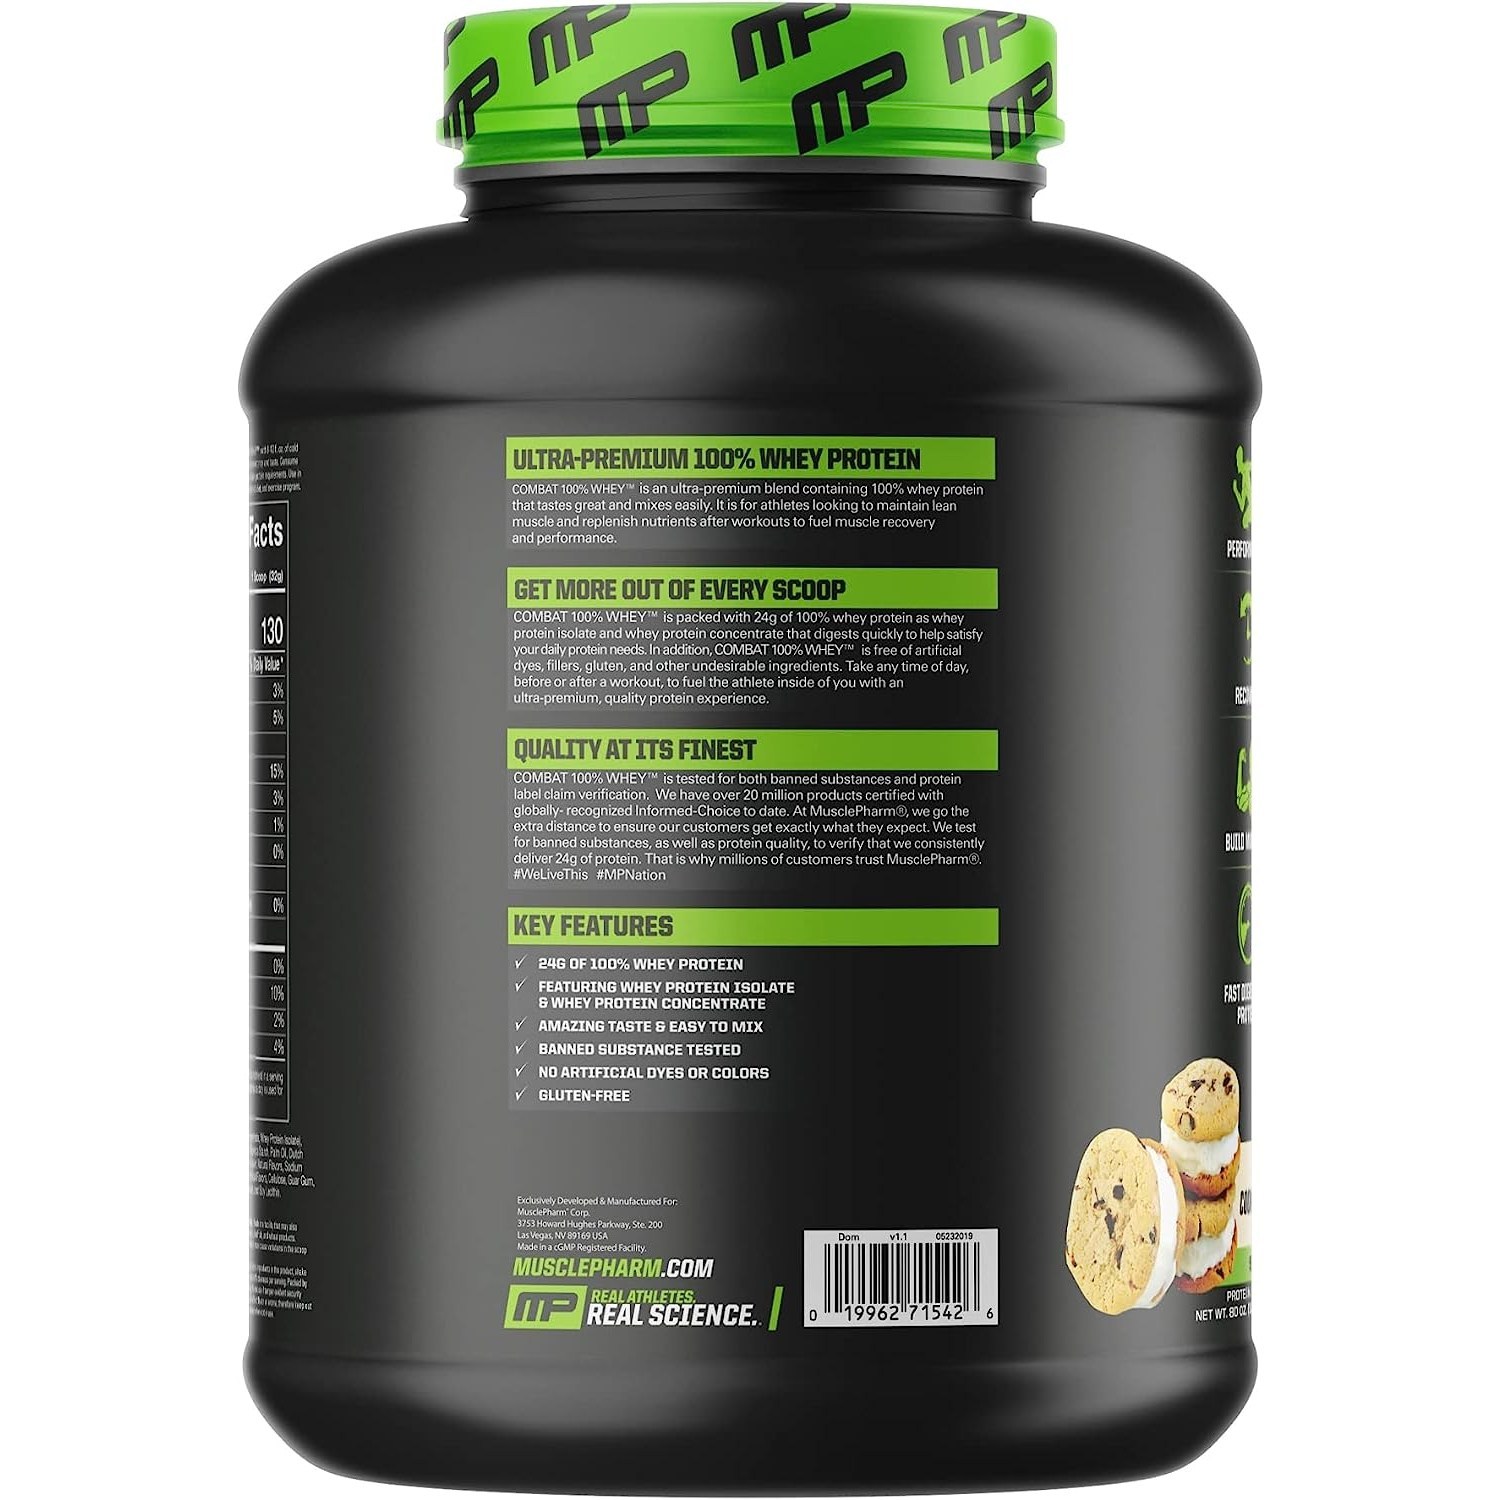 머슬팜 컴뱃 울트라 웨이 프로틴 파우더 드링크 믹스 단백질 보충제 쿠키앤크림, 2240g, 1개 - thumb image